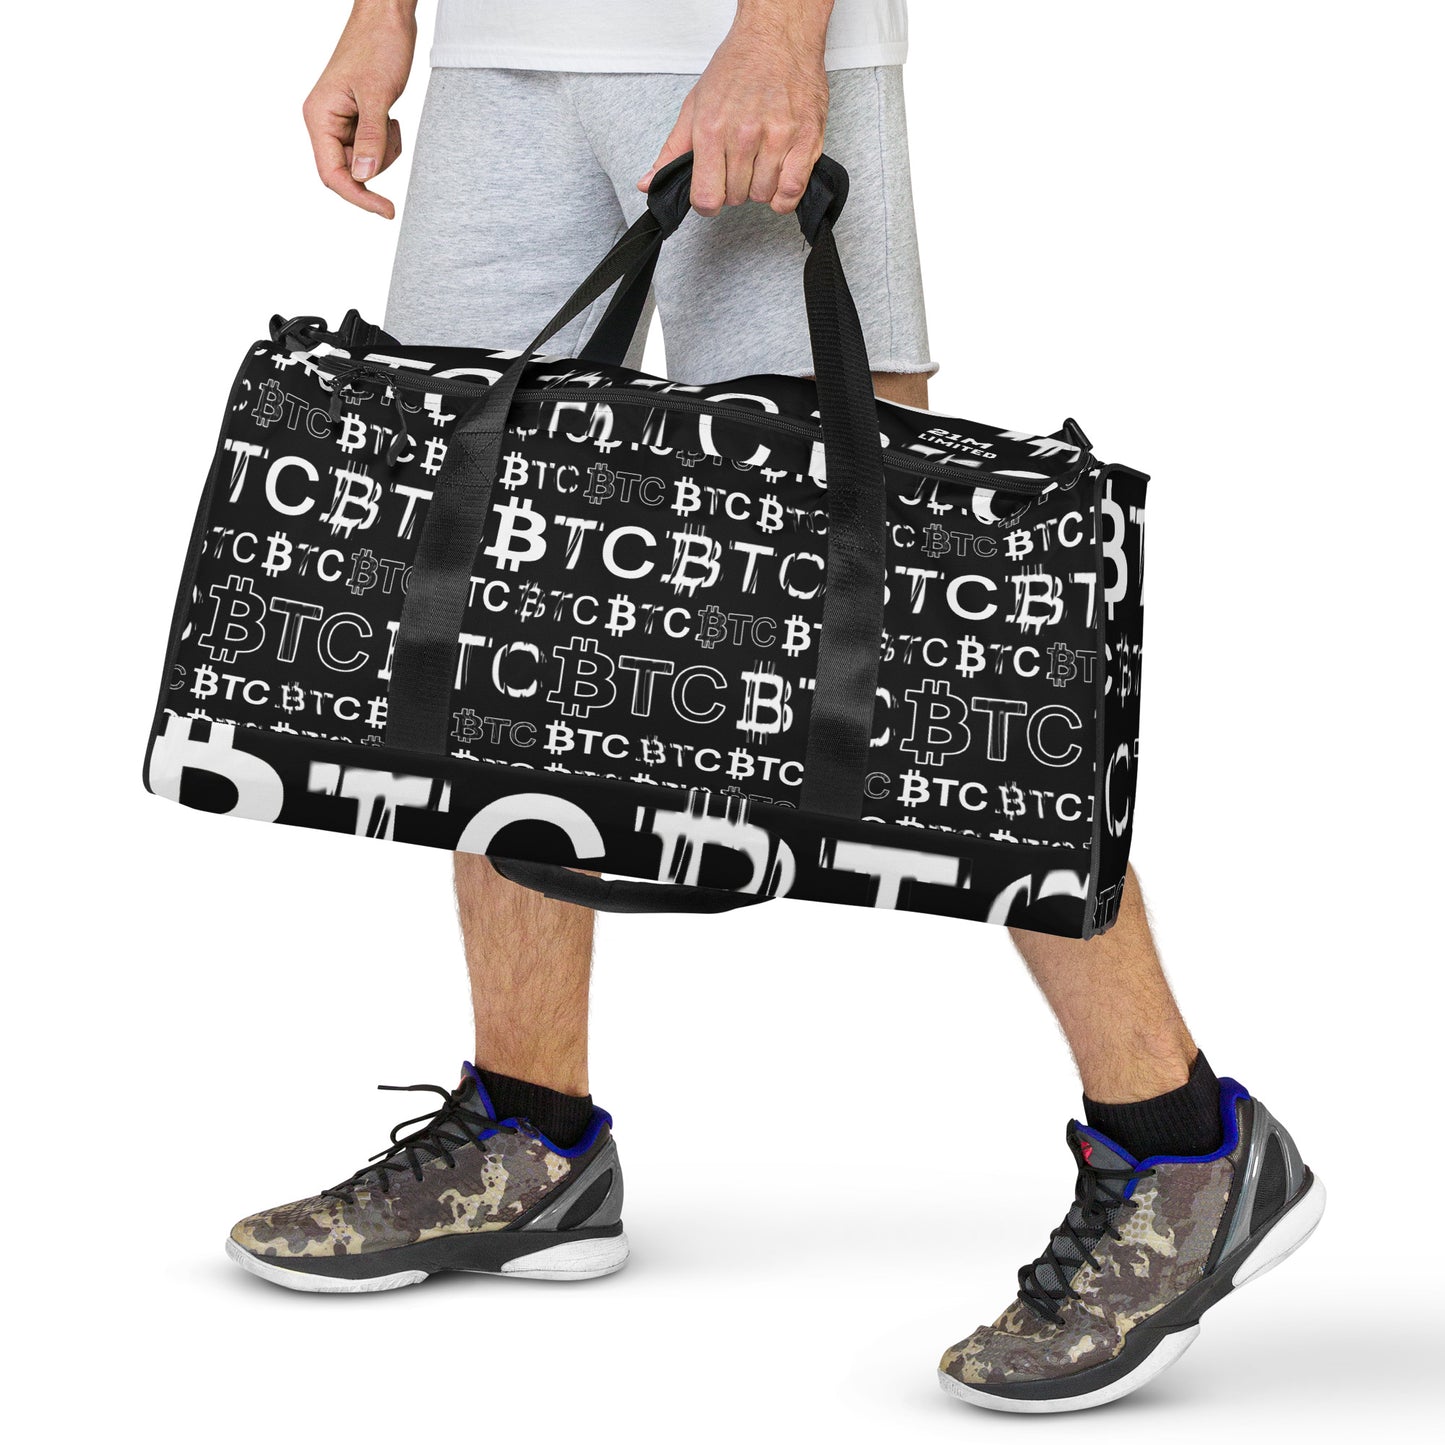 Bitcoin Dubai Duffle Bag